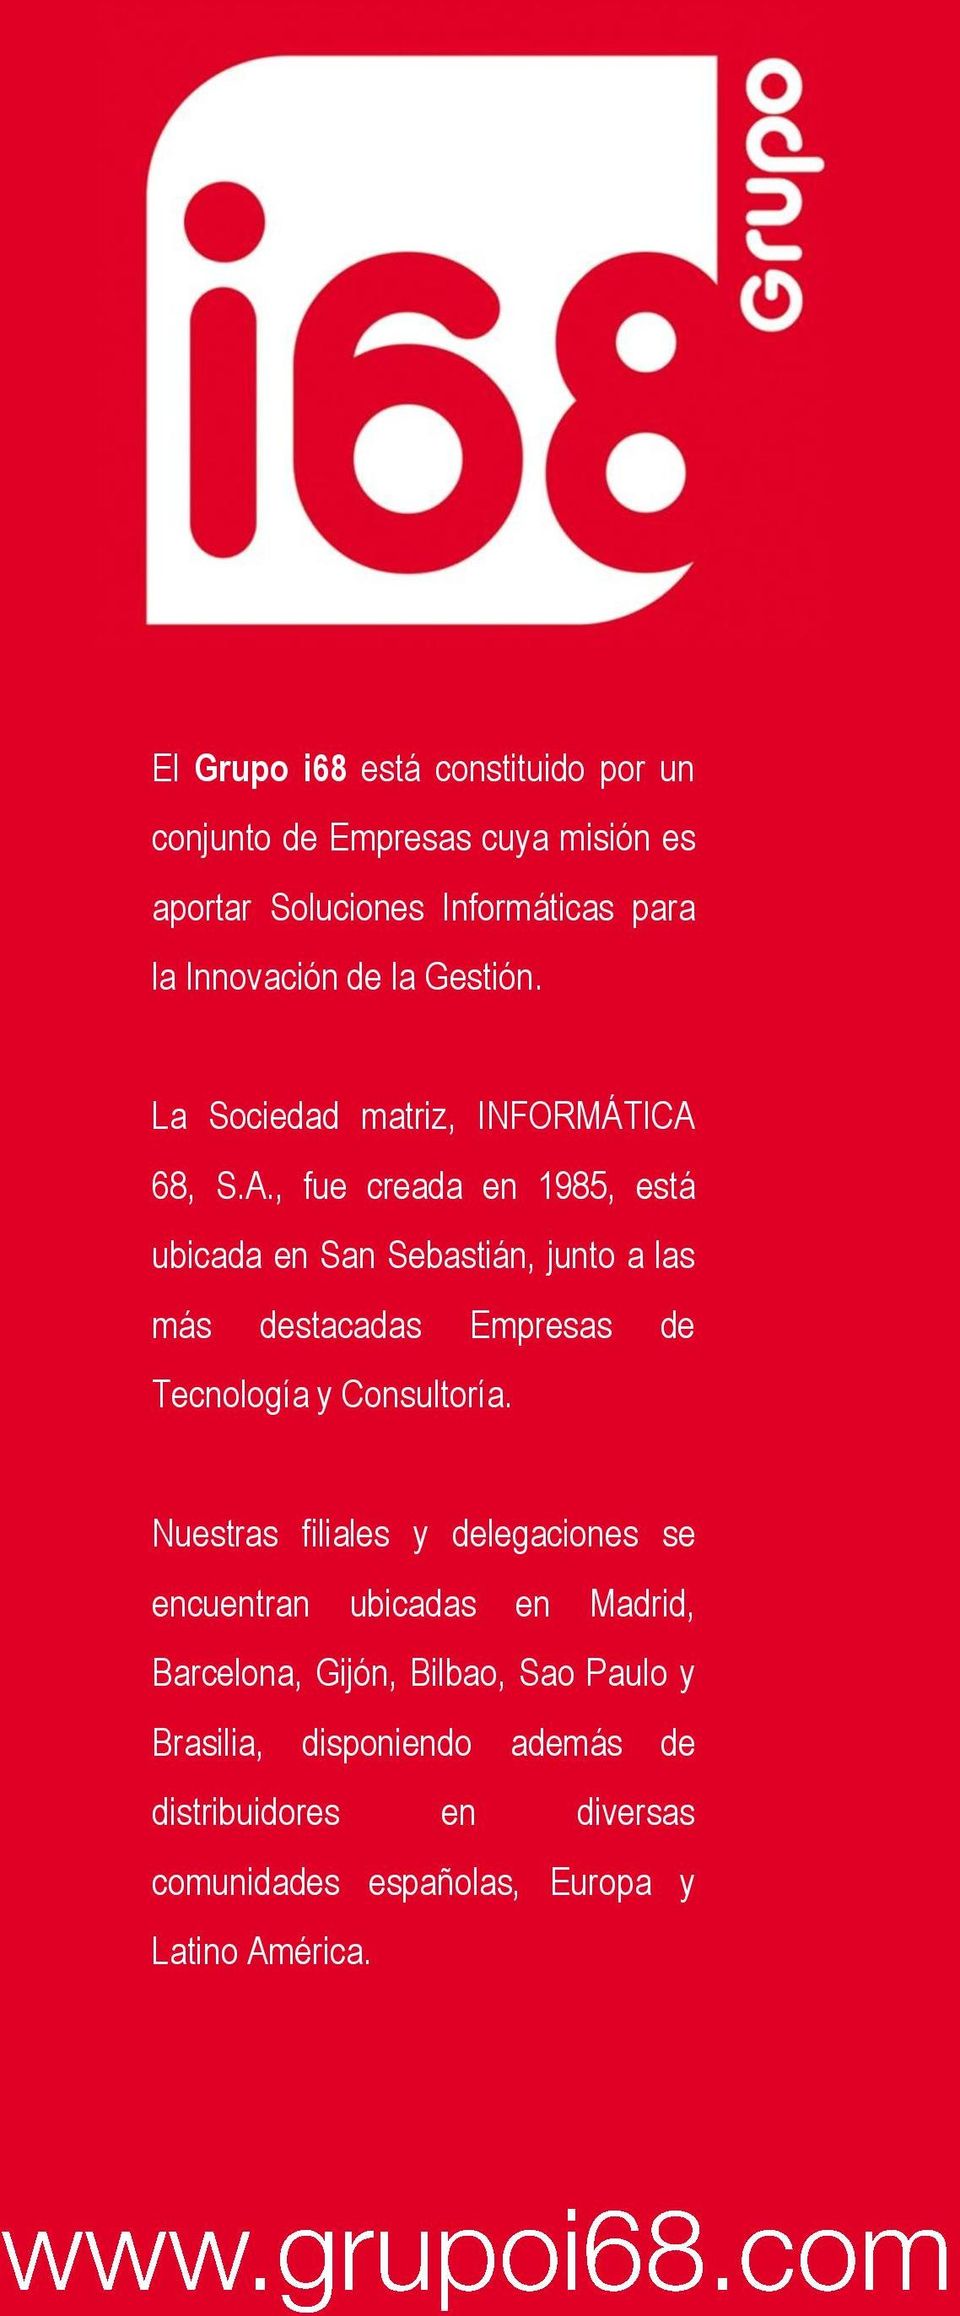 68, S.A., fue creada en 1985, está ubicada en San Sebastián, junto a las más destacadas Empresas de Tecnología y Consultoría.